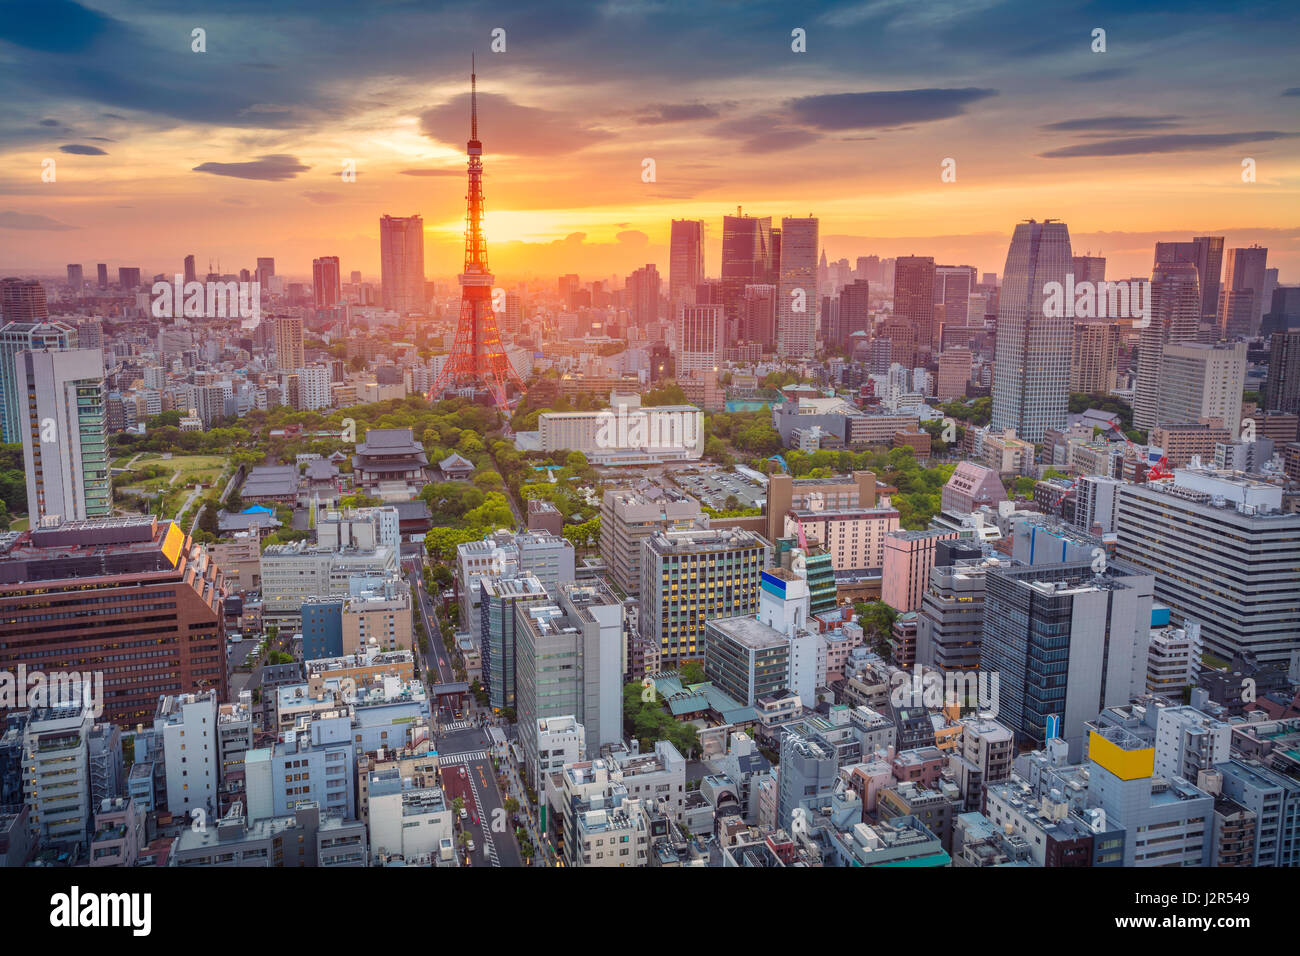 Tokio. Imagen del paisaje urbano de Tokyo, Japón durante la puesta de sol. Foto de stock